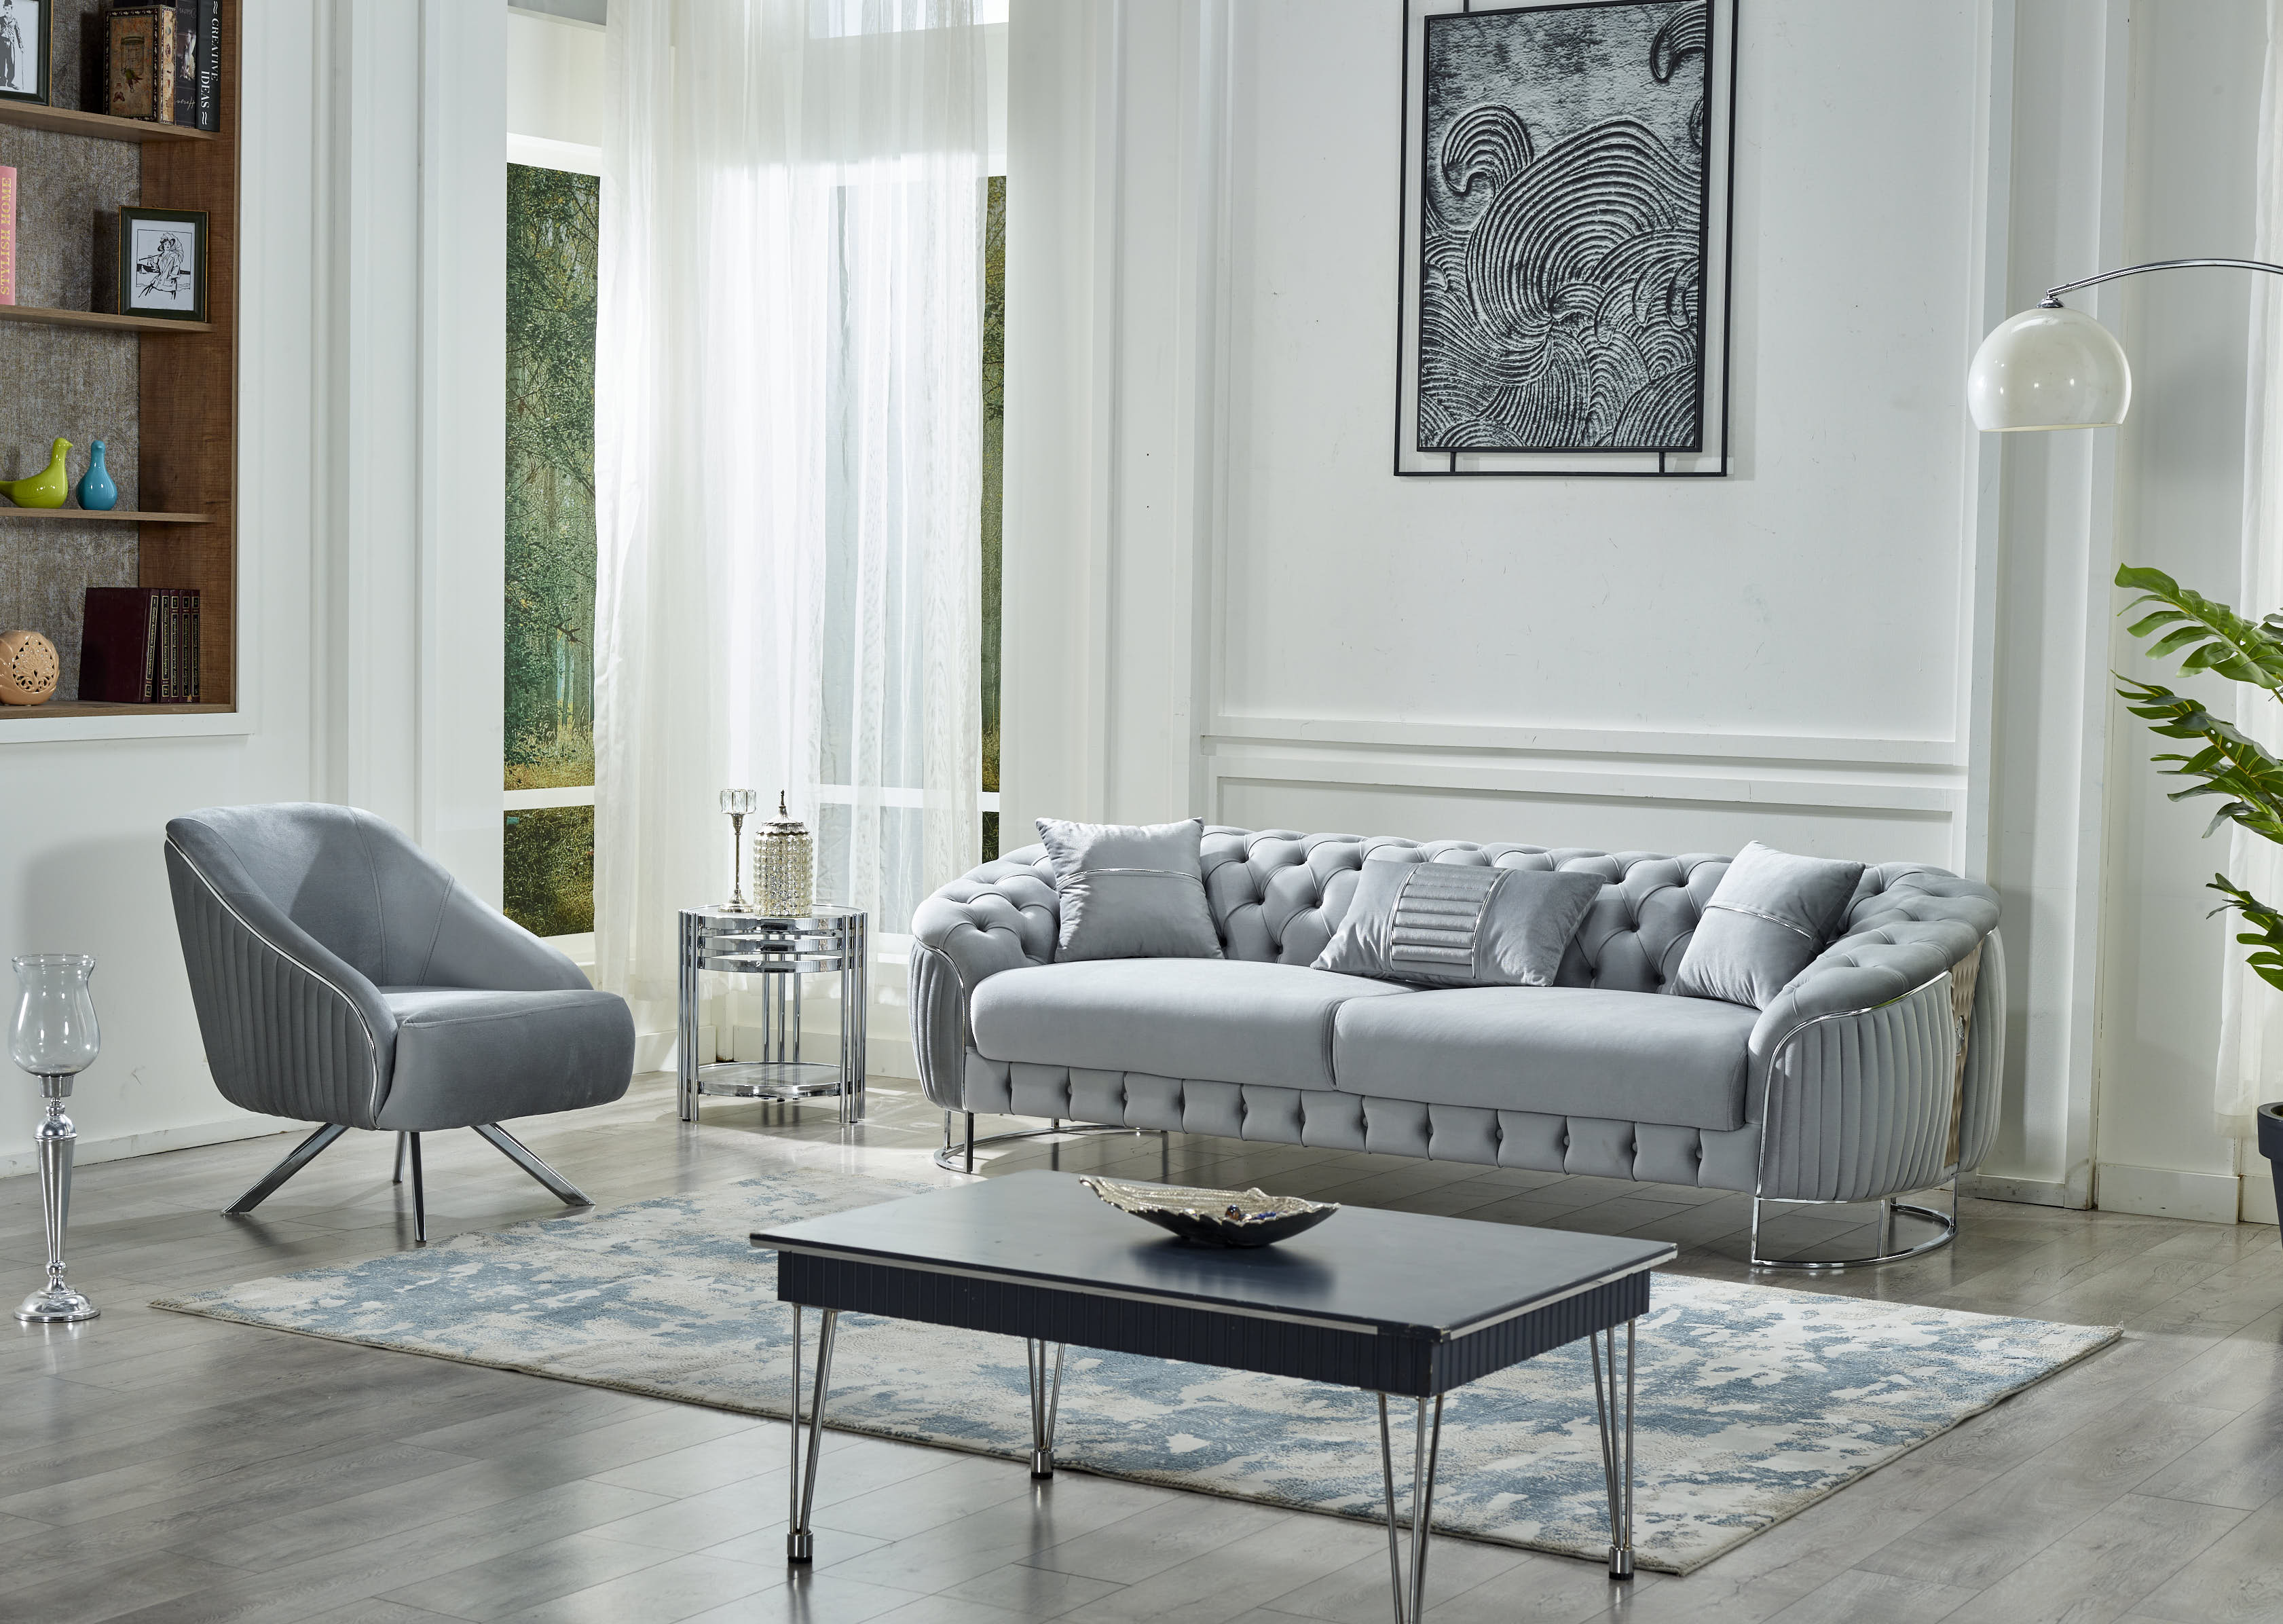 Lucas Stationary Livingroom (2 Sofa & 2 Chair) Light Grey